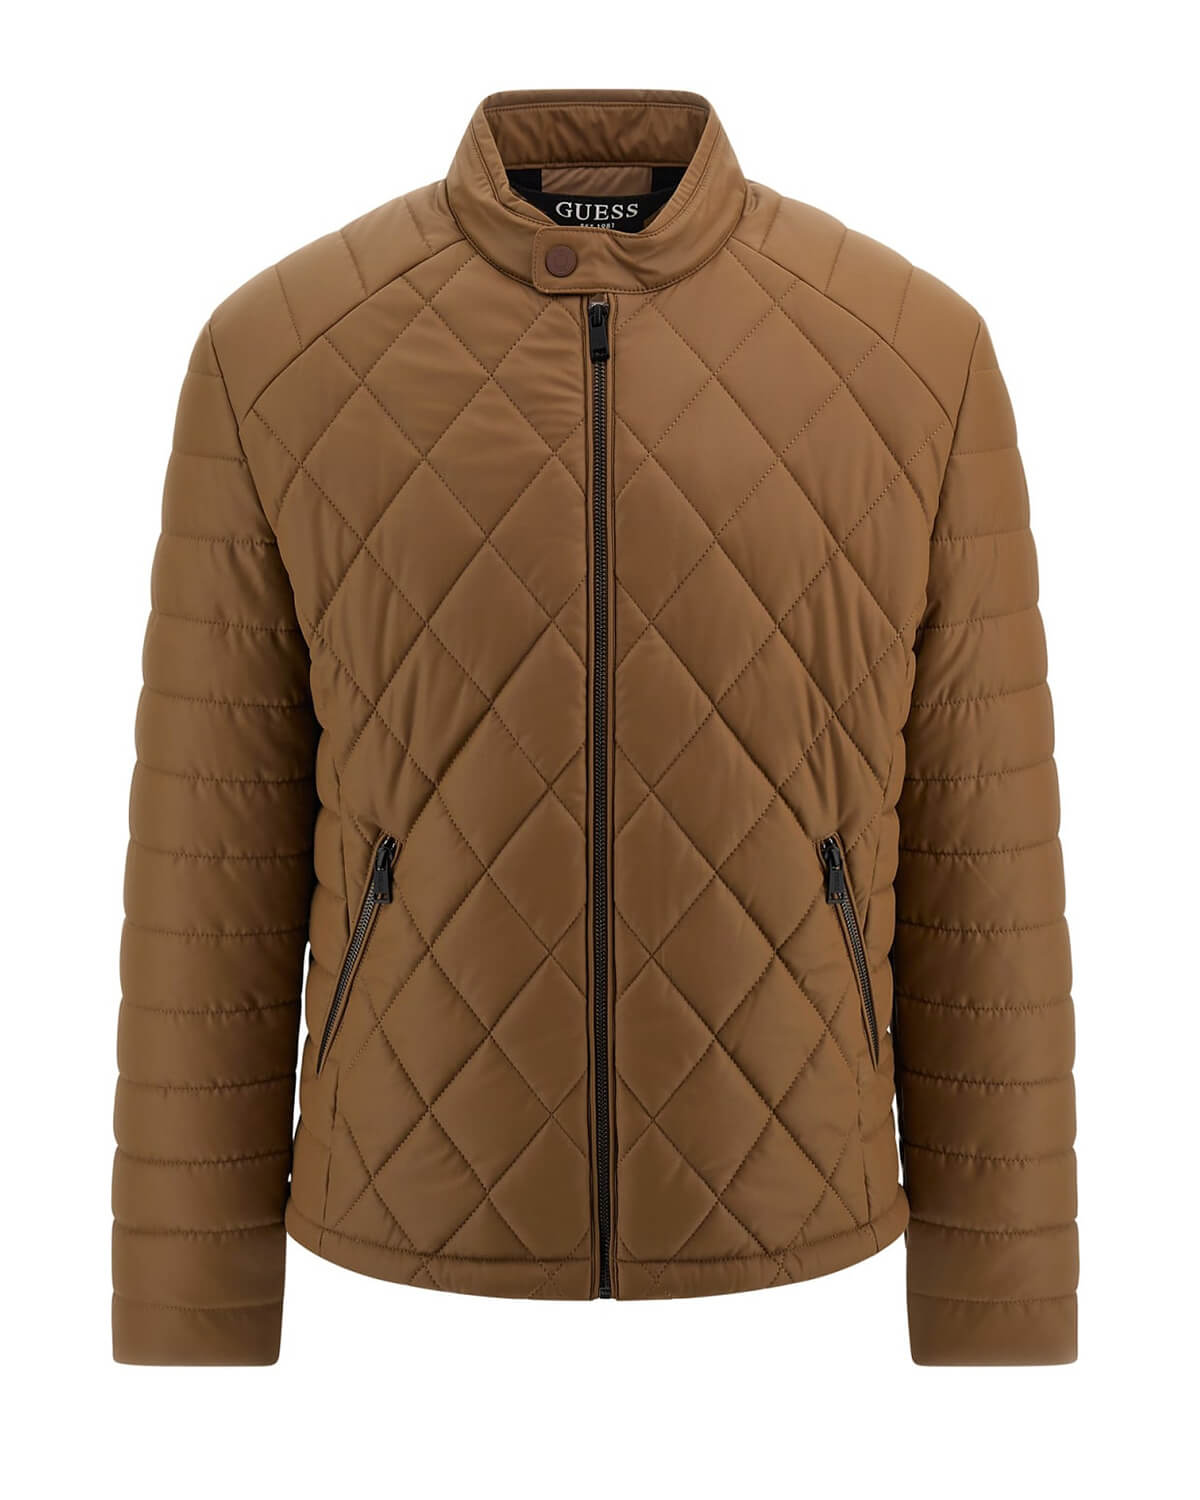 Ανδρικό Jacket Guess - Stretch Faux Leather